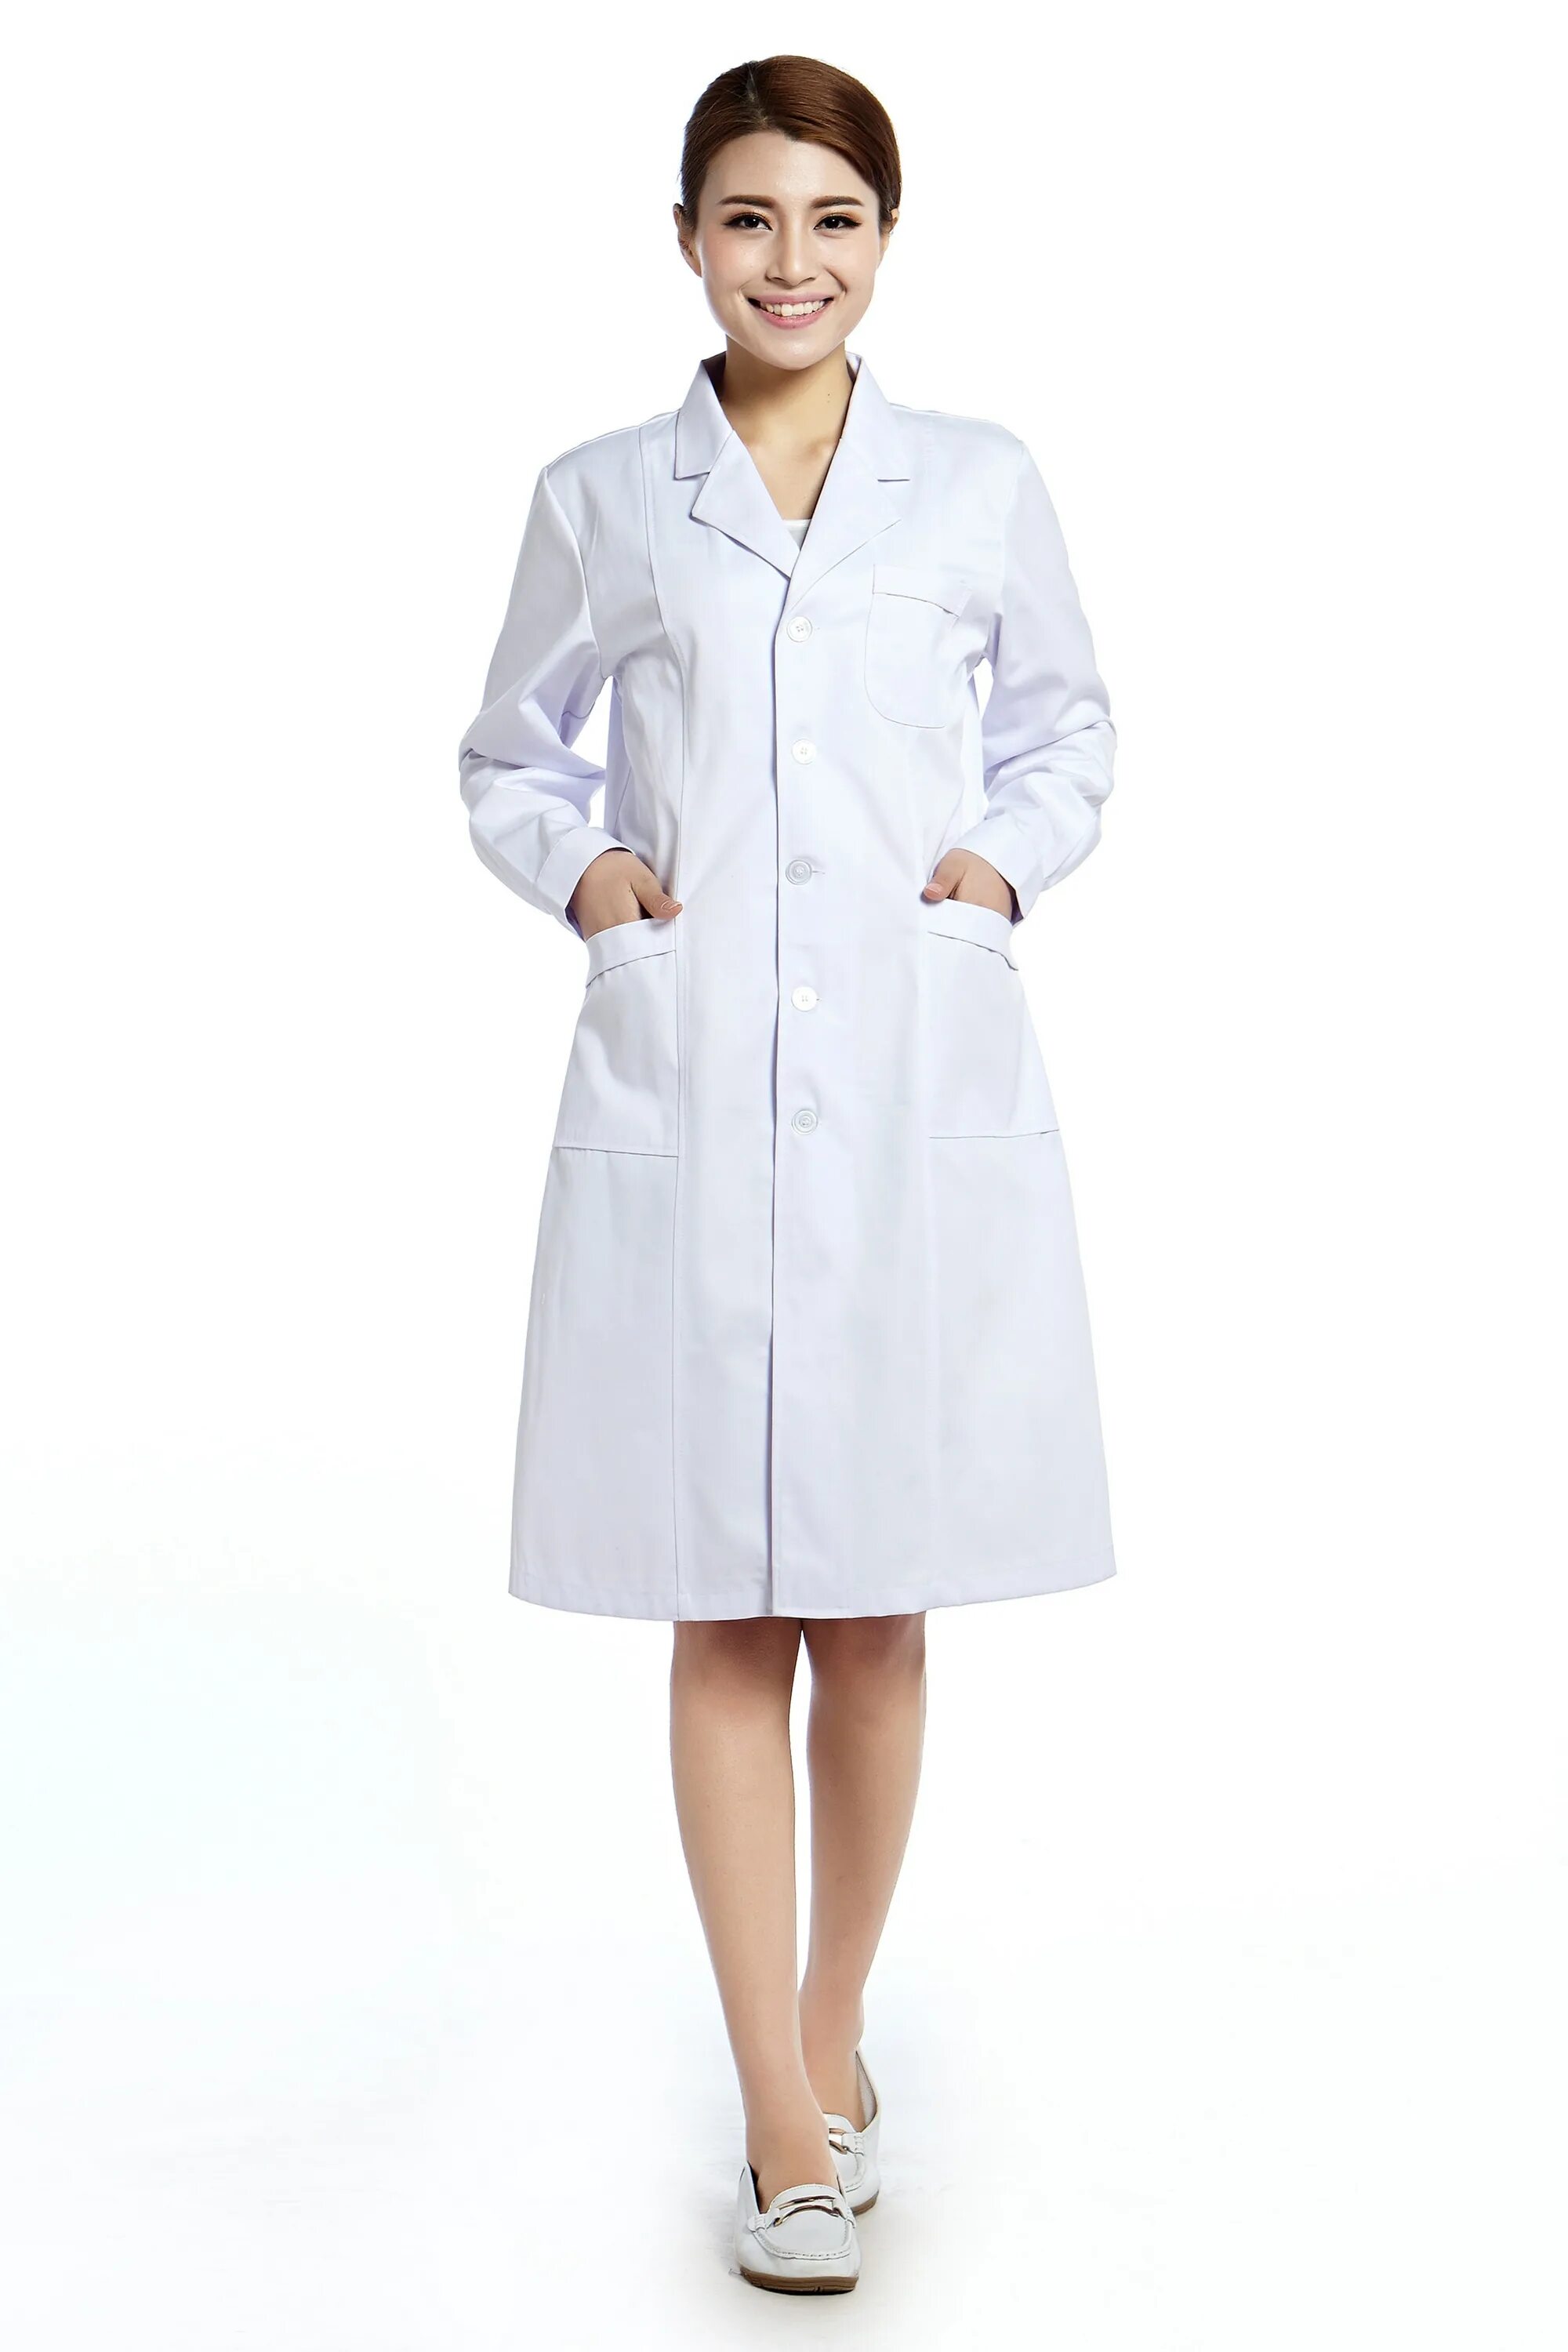 Wear Plus лабораторный халат Nelson. Белый лабораторный халат. Одежда врача. Халат медицинский белый.